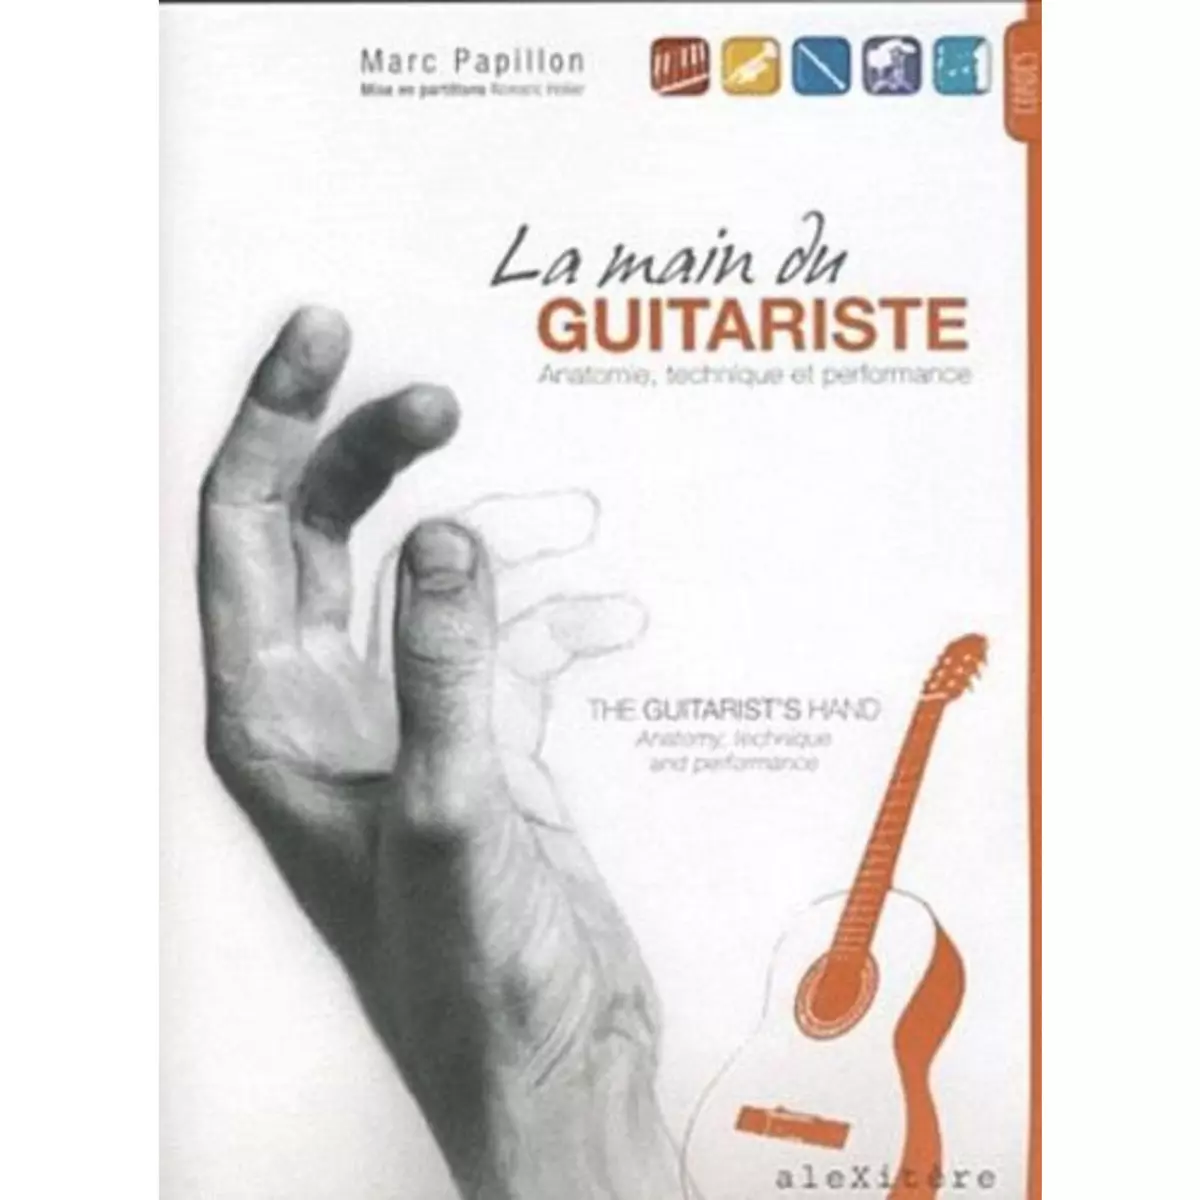  LA MAIN DU GUITARISTE : ANATOMIE, TECHNIQUE ET PERFORMANCE. THE GUITARIST'S HAND : ANATOMY, TECHNIQUE AND PERFORMANCE, Papillon Marc